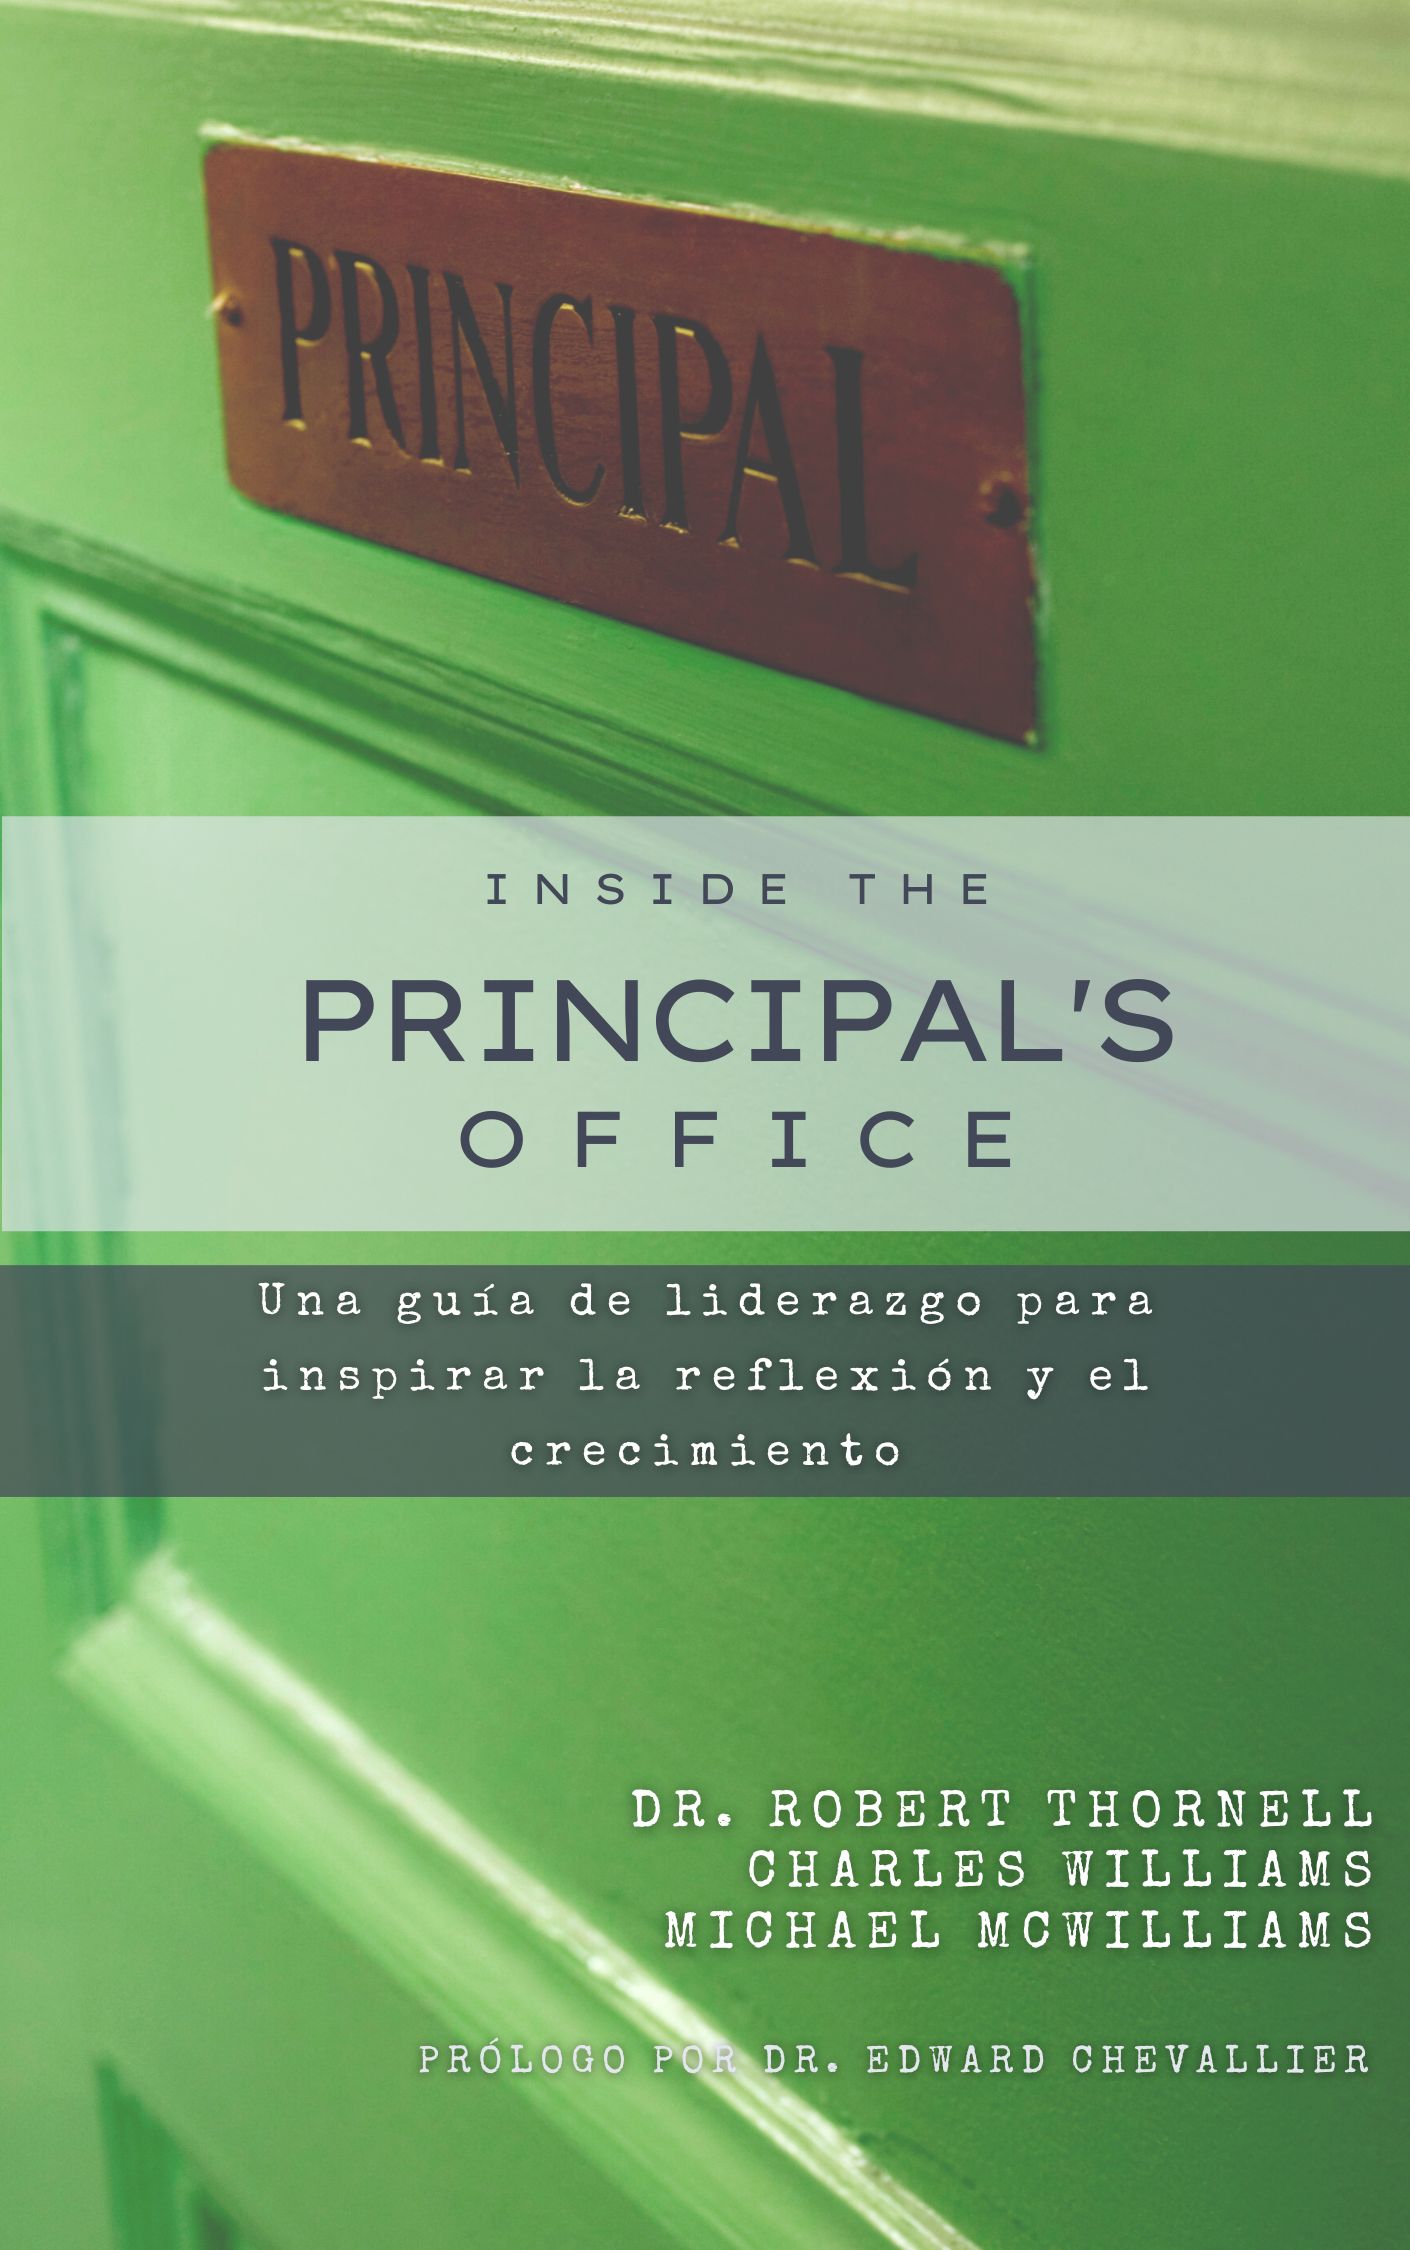 Inside the Principal's Office: Una guía de liderazgo para inspirar la reflexión y el crecimiento